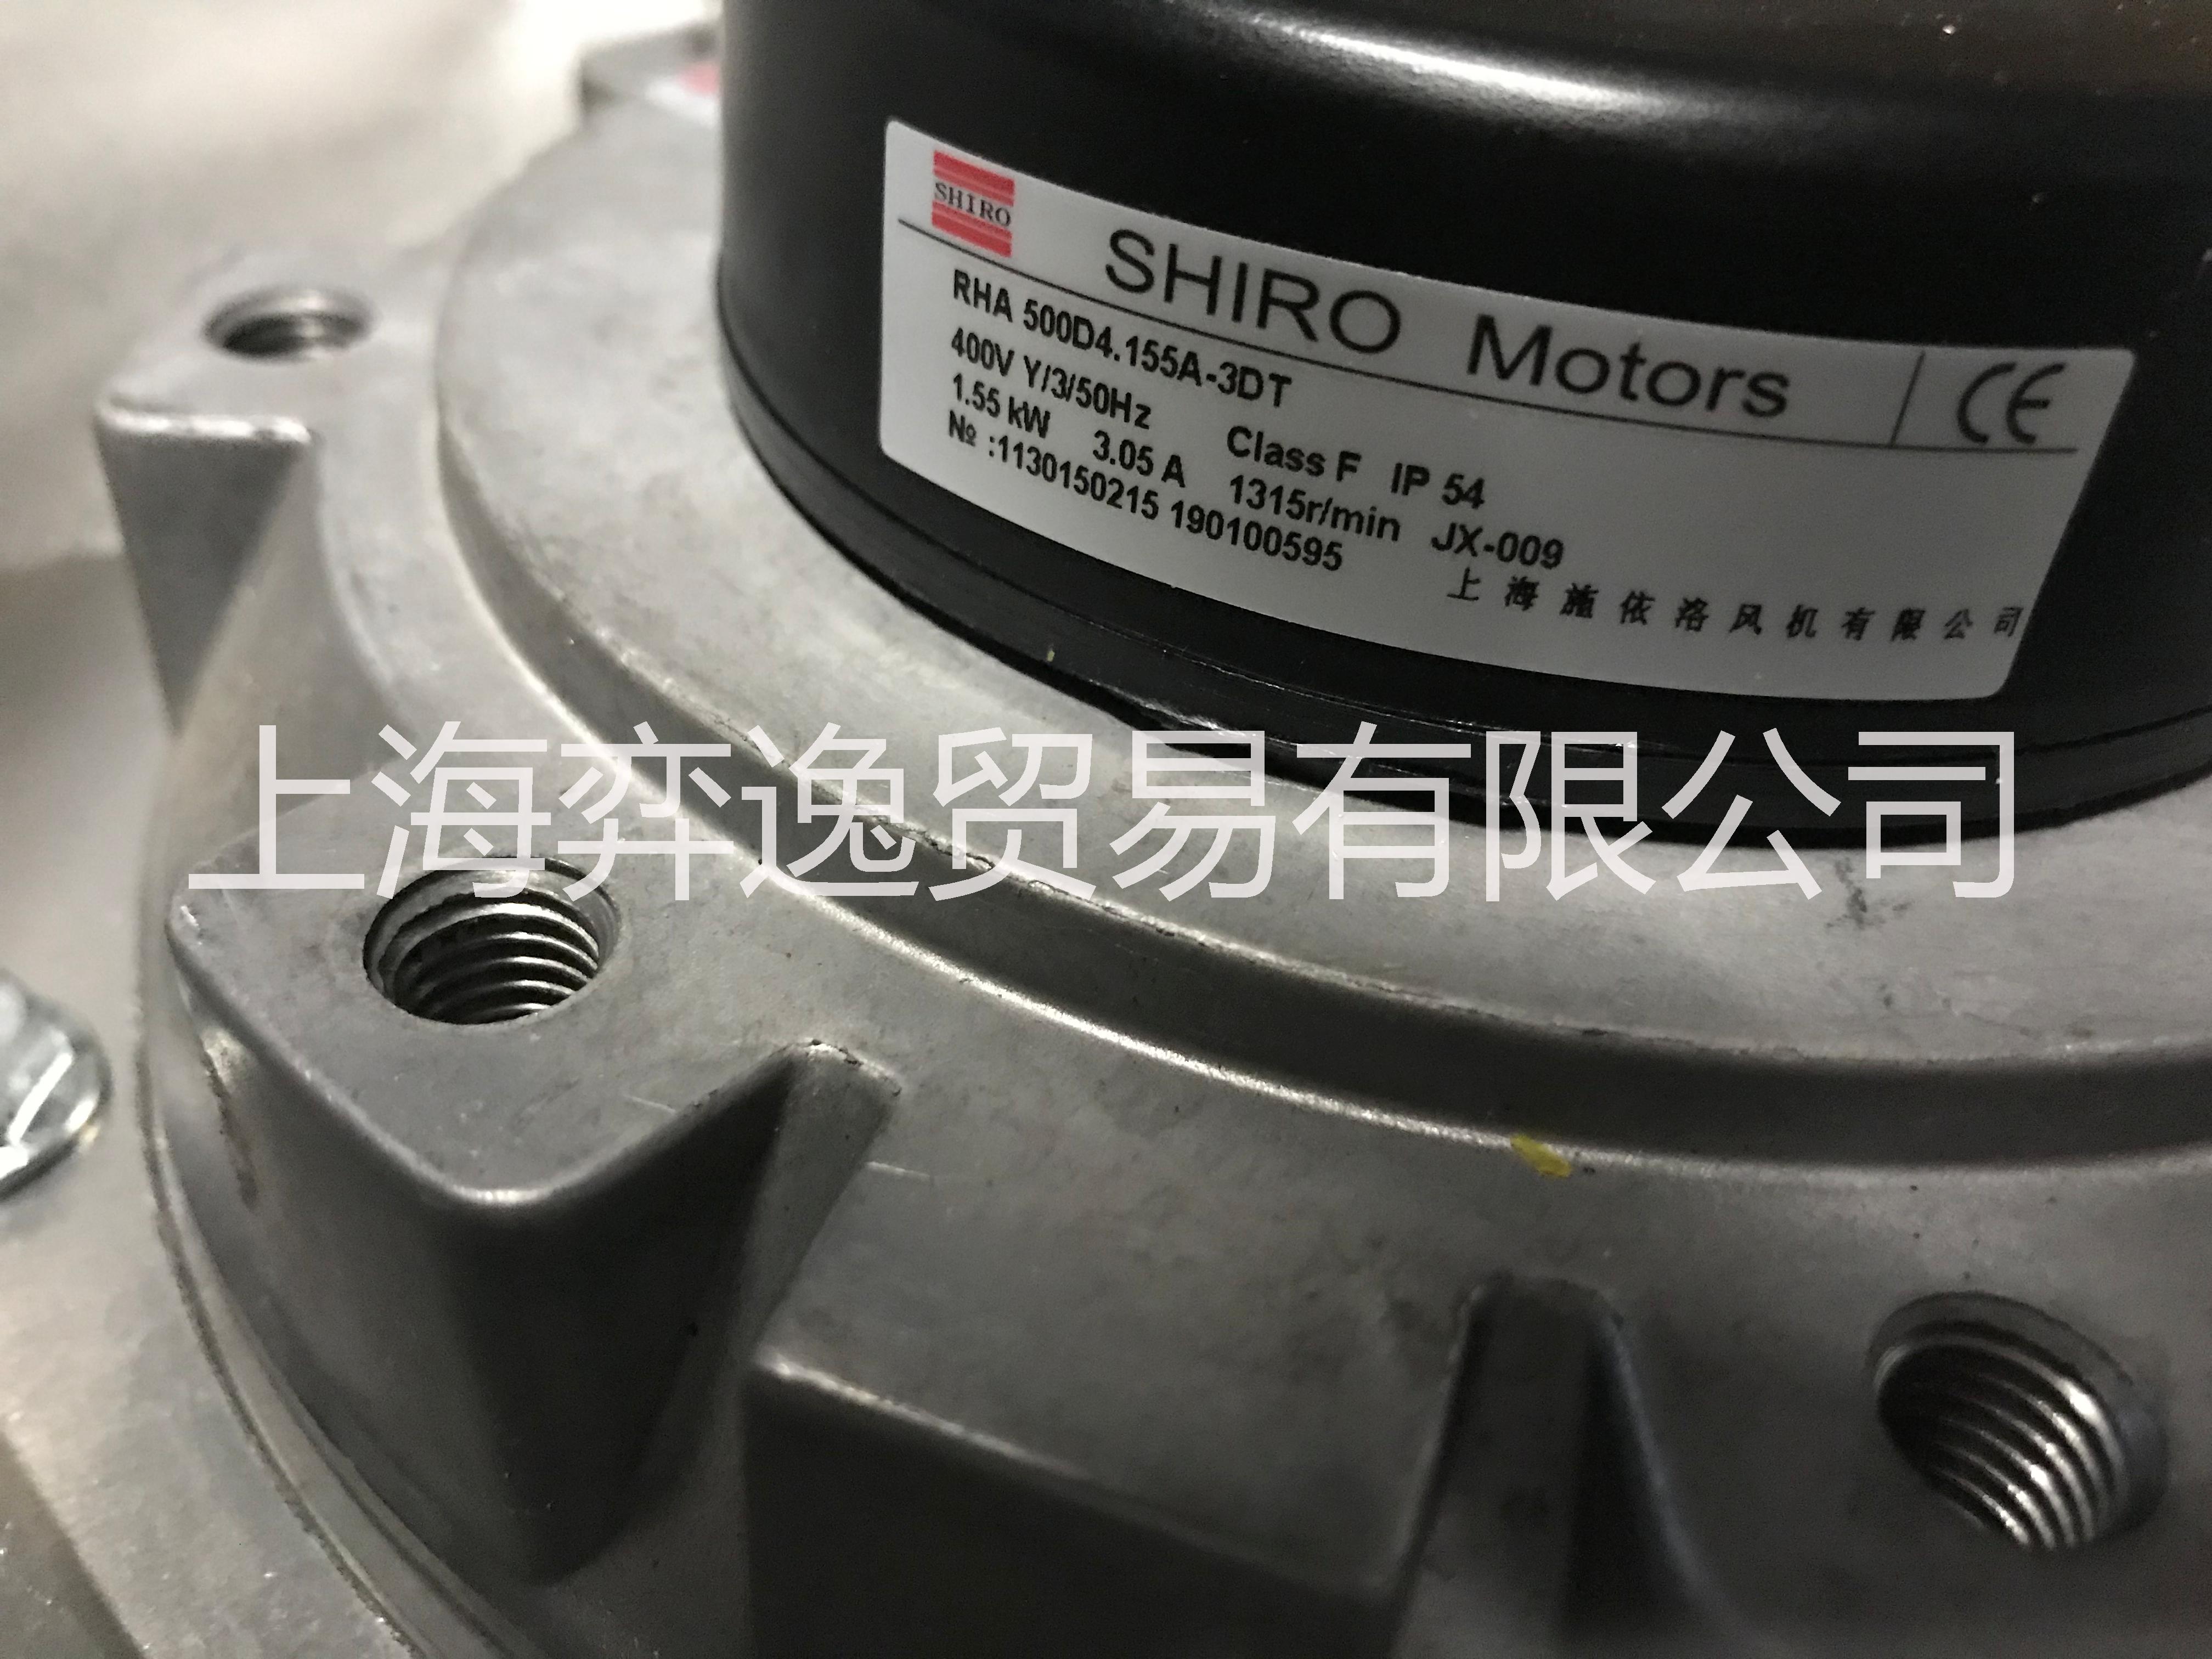 上海施依洛RHA500D4正品现货DKHR500-4KW  RHA500D4.155A-3DT现货供应图片